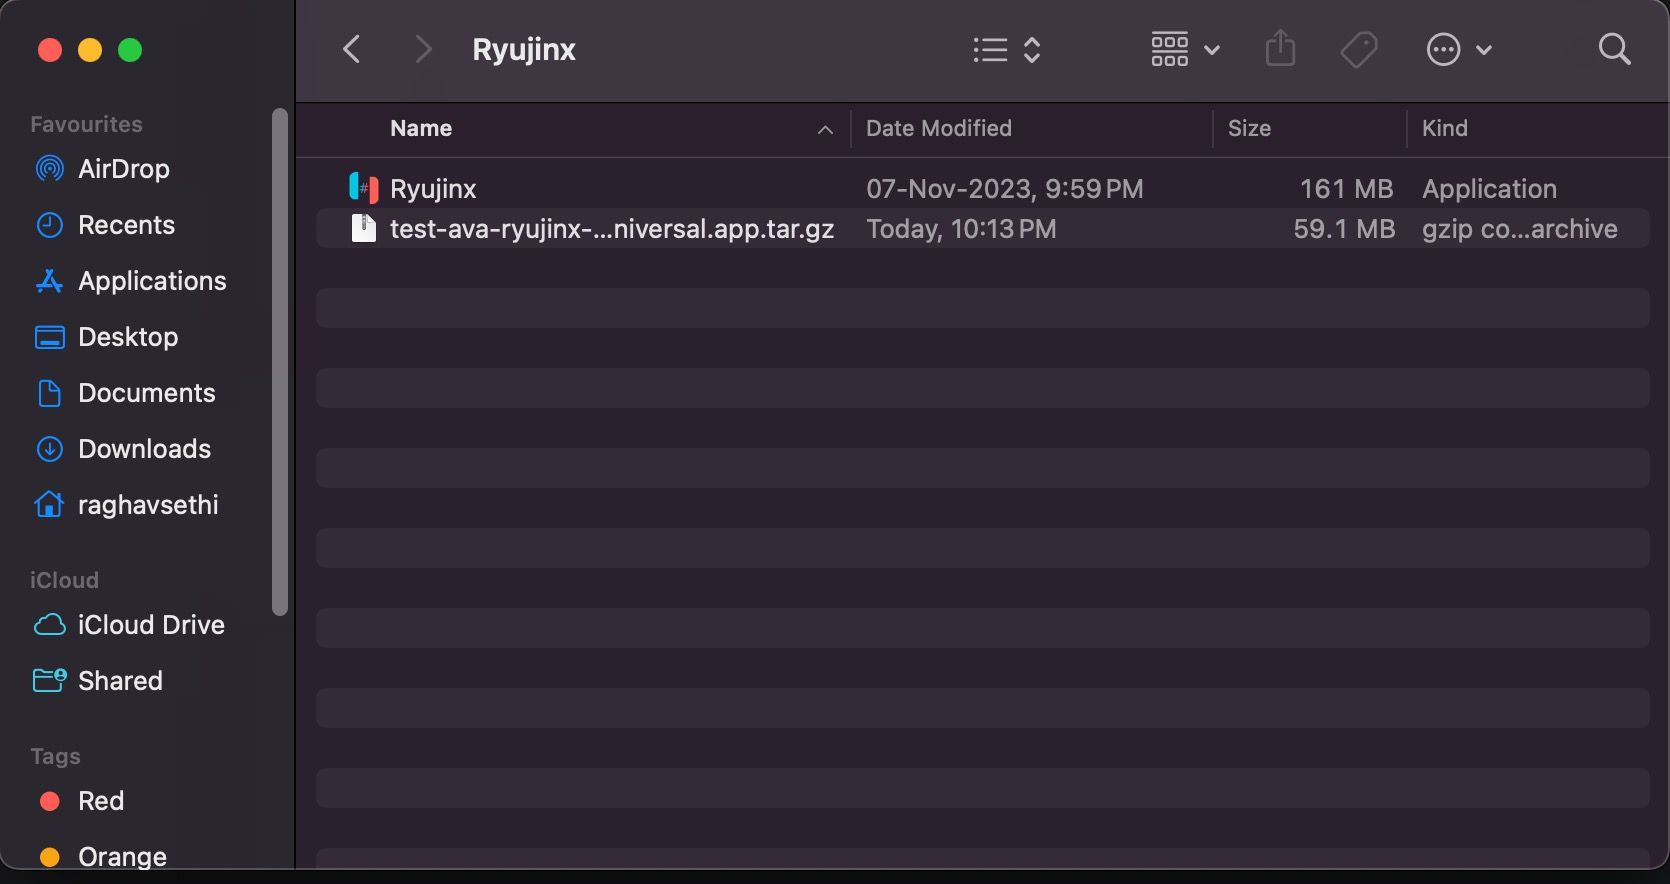 macOS Finder-Fenster mit 2 Dateien, einer komprimierten Ryujinx-Datei und einer ausführbaren Ryujinx-Datei.